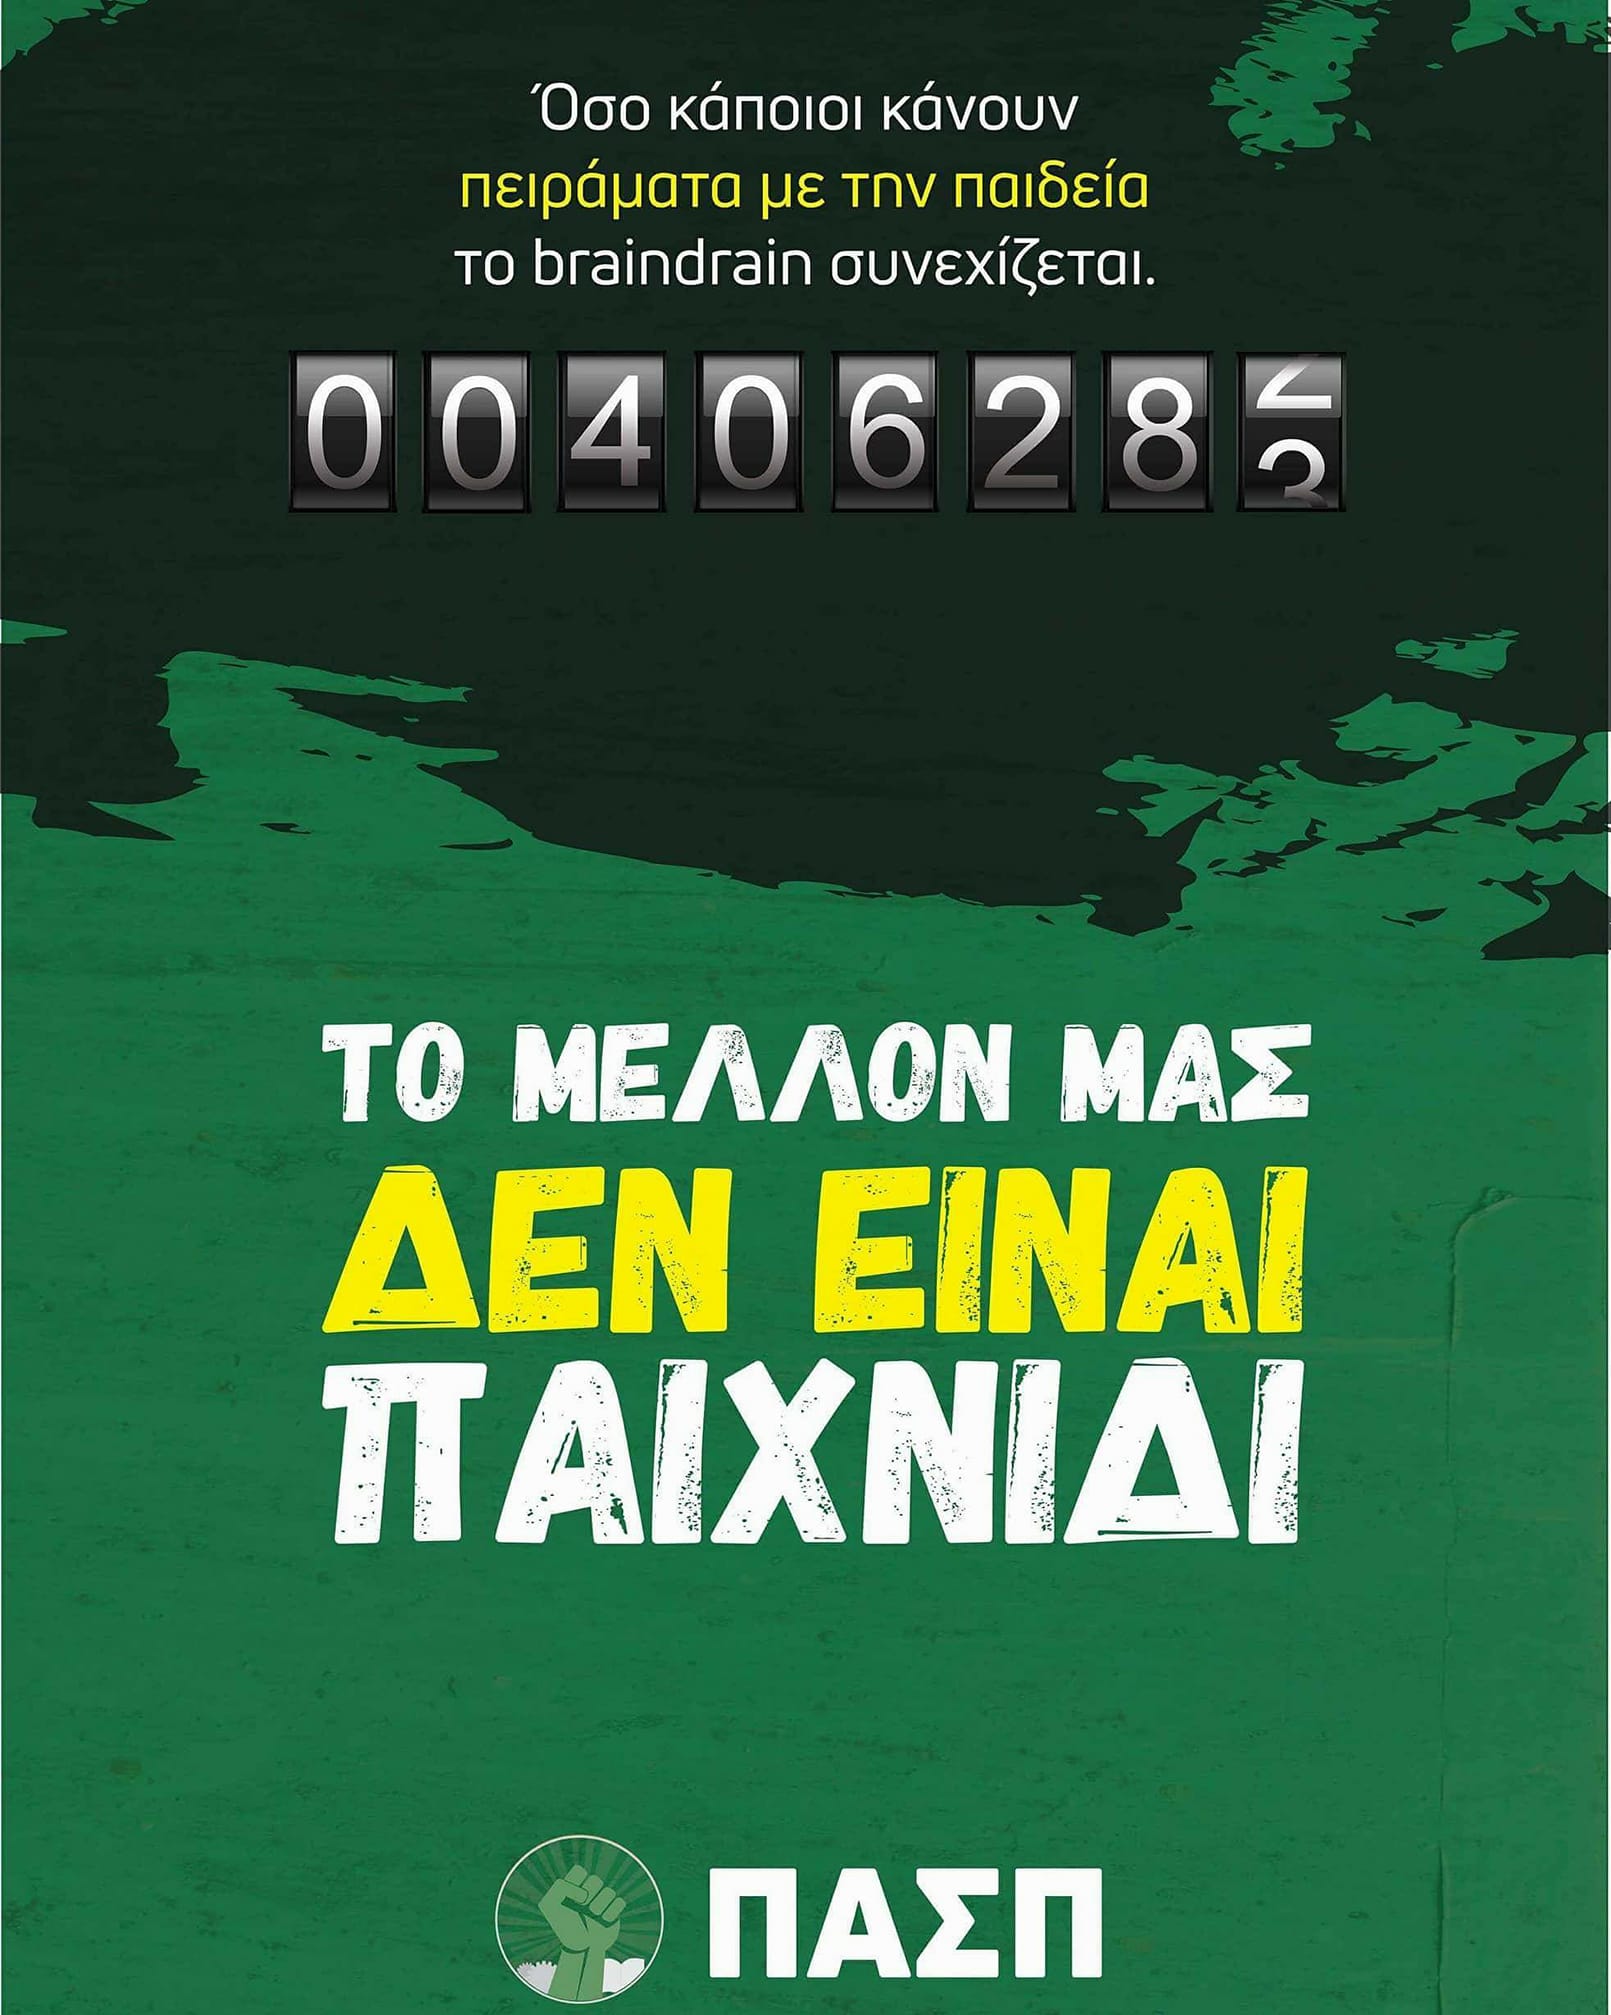 αφίσα ΠΑΣΠ φοιτητικές εκλογές 2018